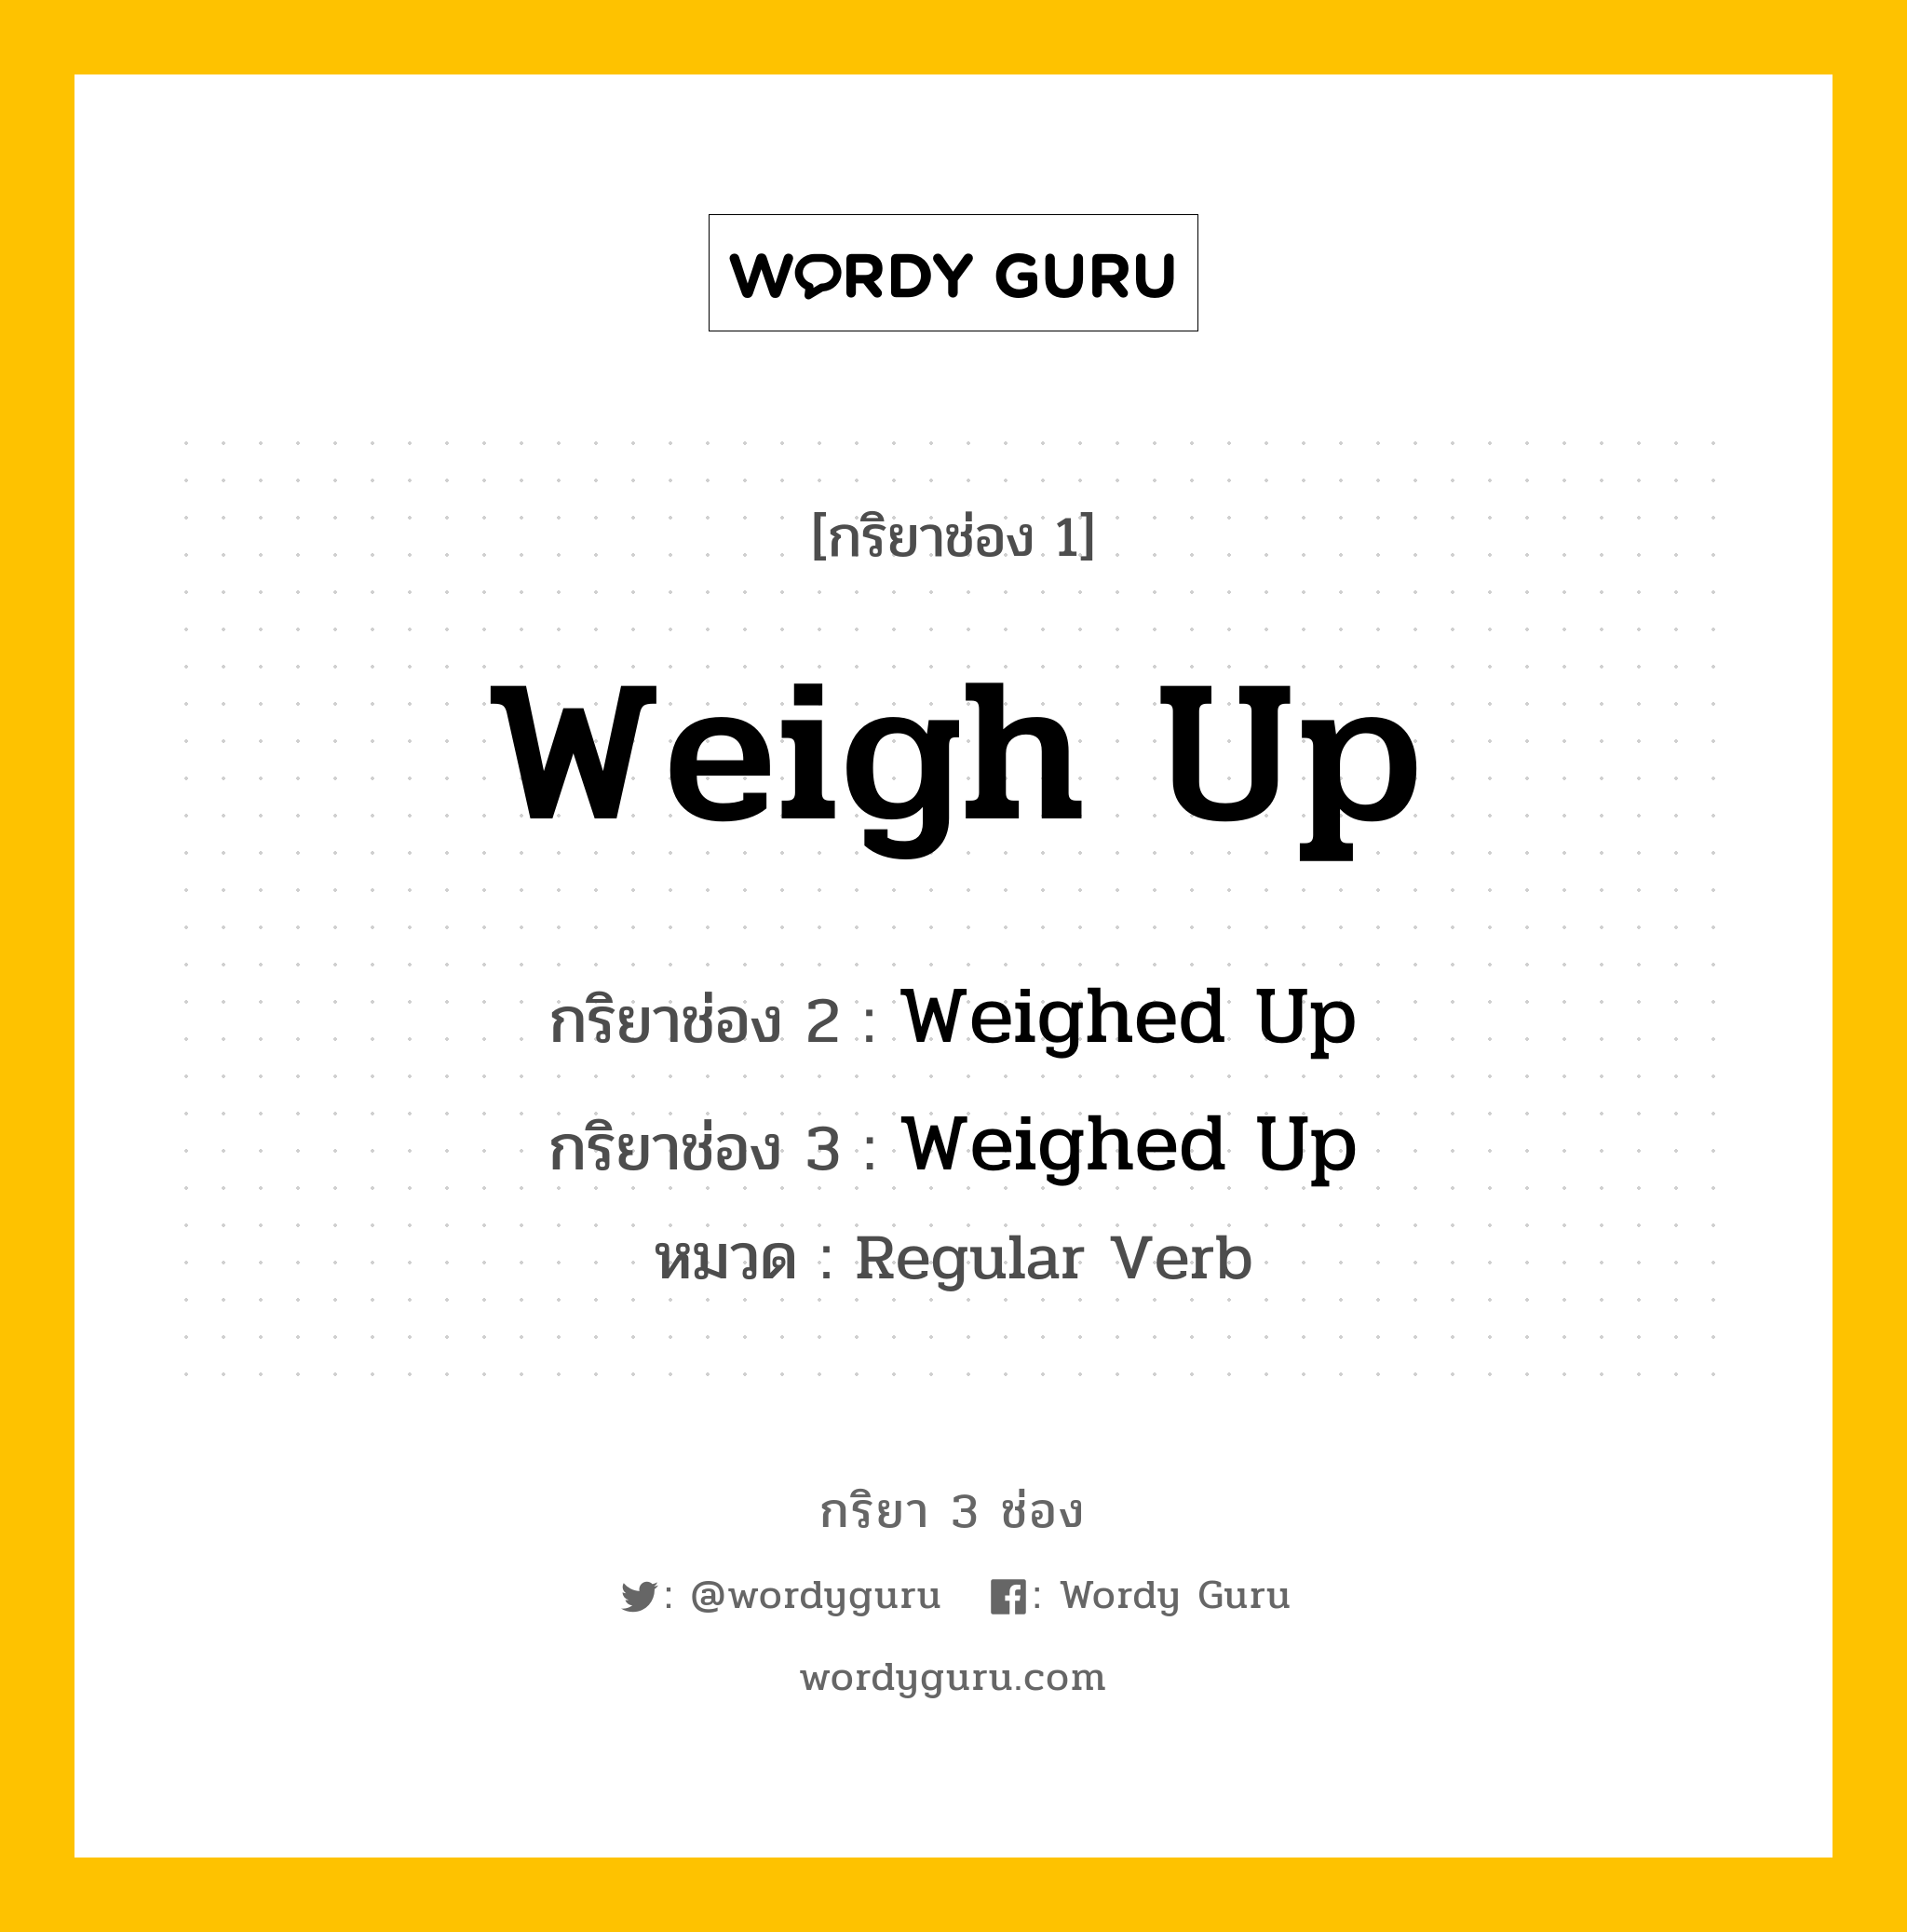 กริยา 3 ช่อง: Weigh Up ช่อง 2 Weigh Up ช่อง 3 คืออะไร, กริยาช่อง 1 Weigh Up กริยาช่อง 2 Weighed Up กริยาช่อง 3 Weighed Up หมวด Regular Verb หมวด Regular Verb